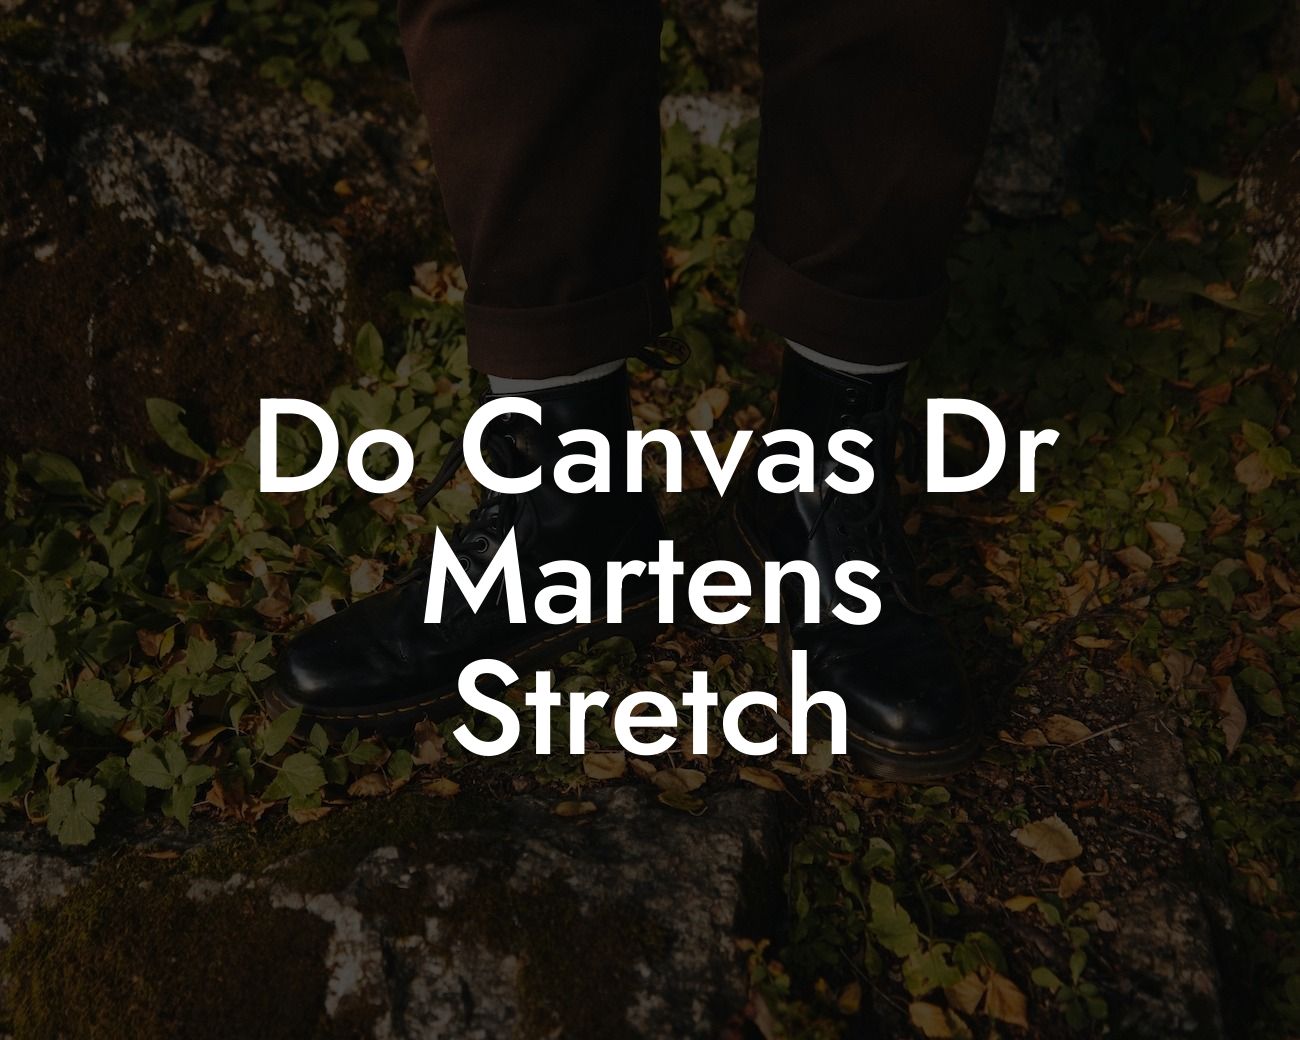 Do Canvas Dr Martens Stretch